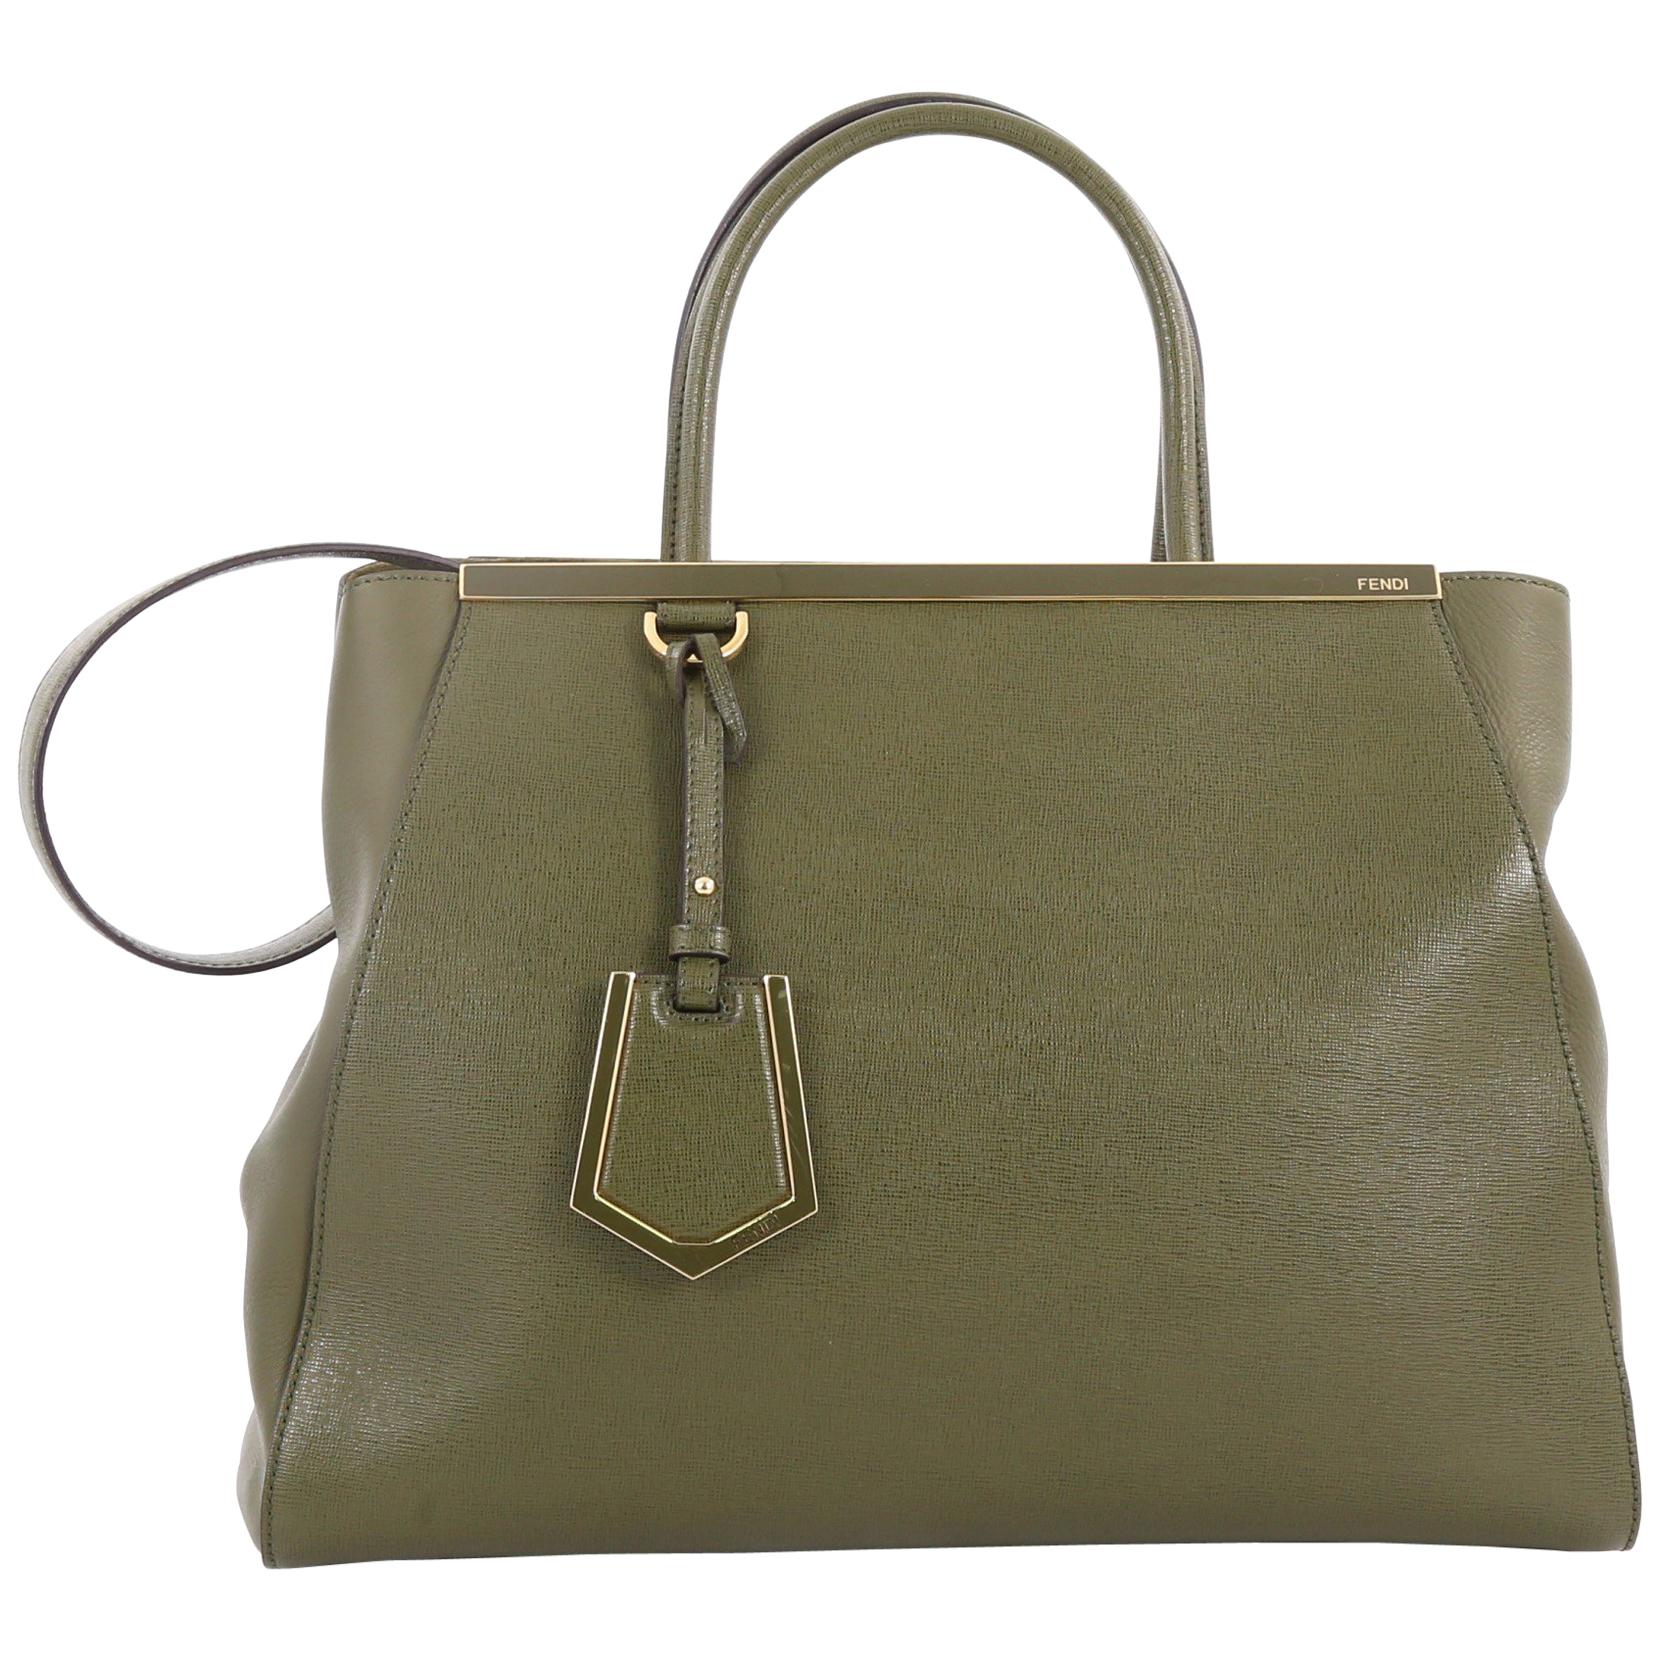 Fendi 2Jours Handbag Leather Medium